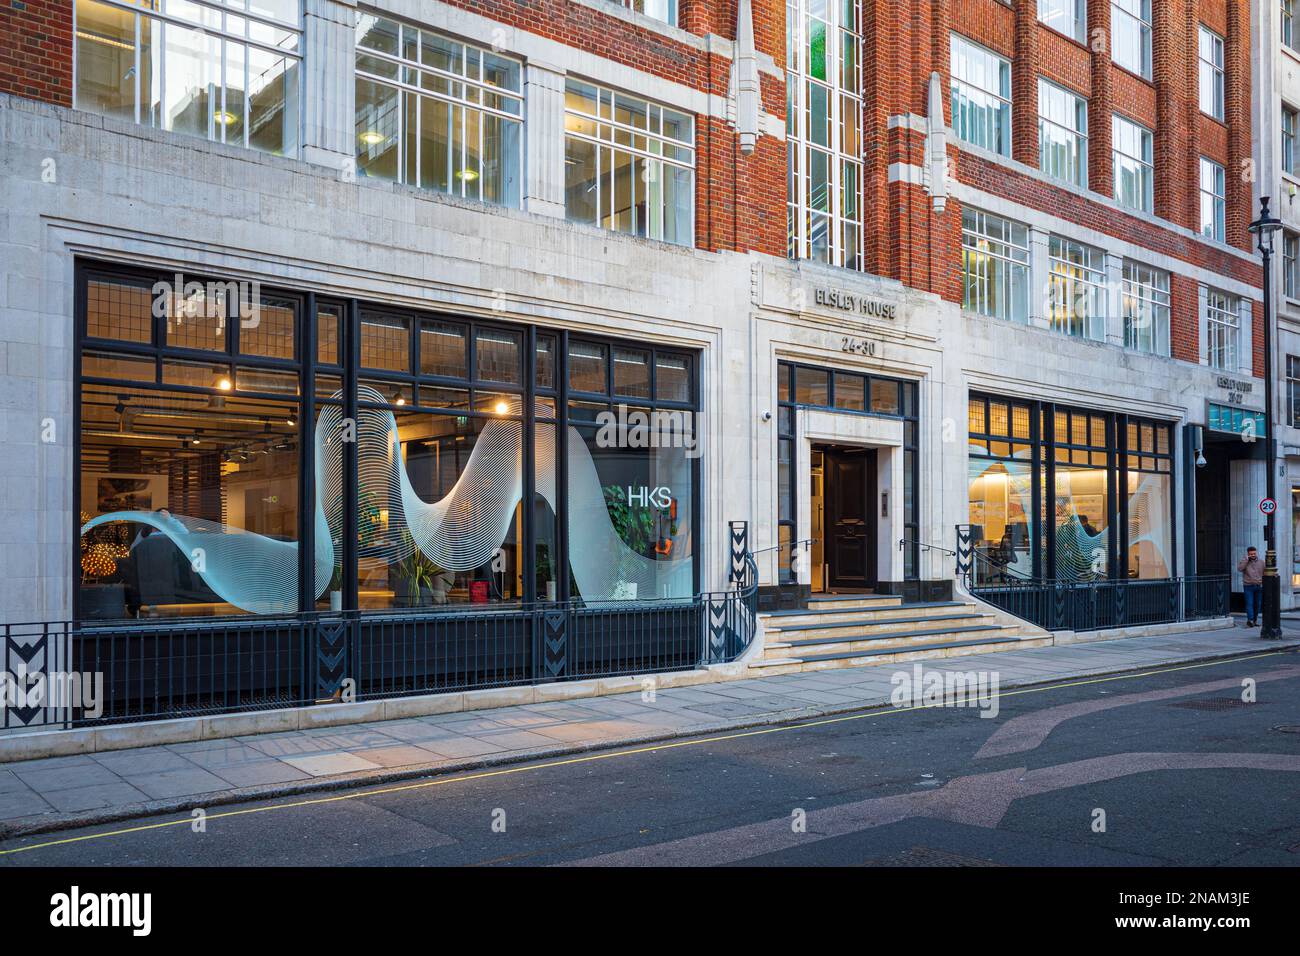 HOK London Design Studio au 90 Whitfield St London. HOK est une société mondiale de conception, d'architecture, d'ingénierie et de planification. Banque D'Images